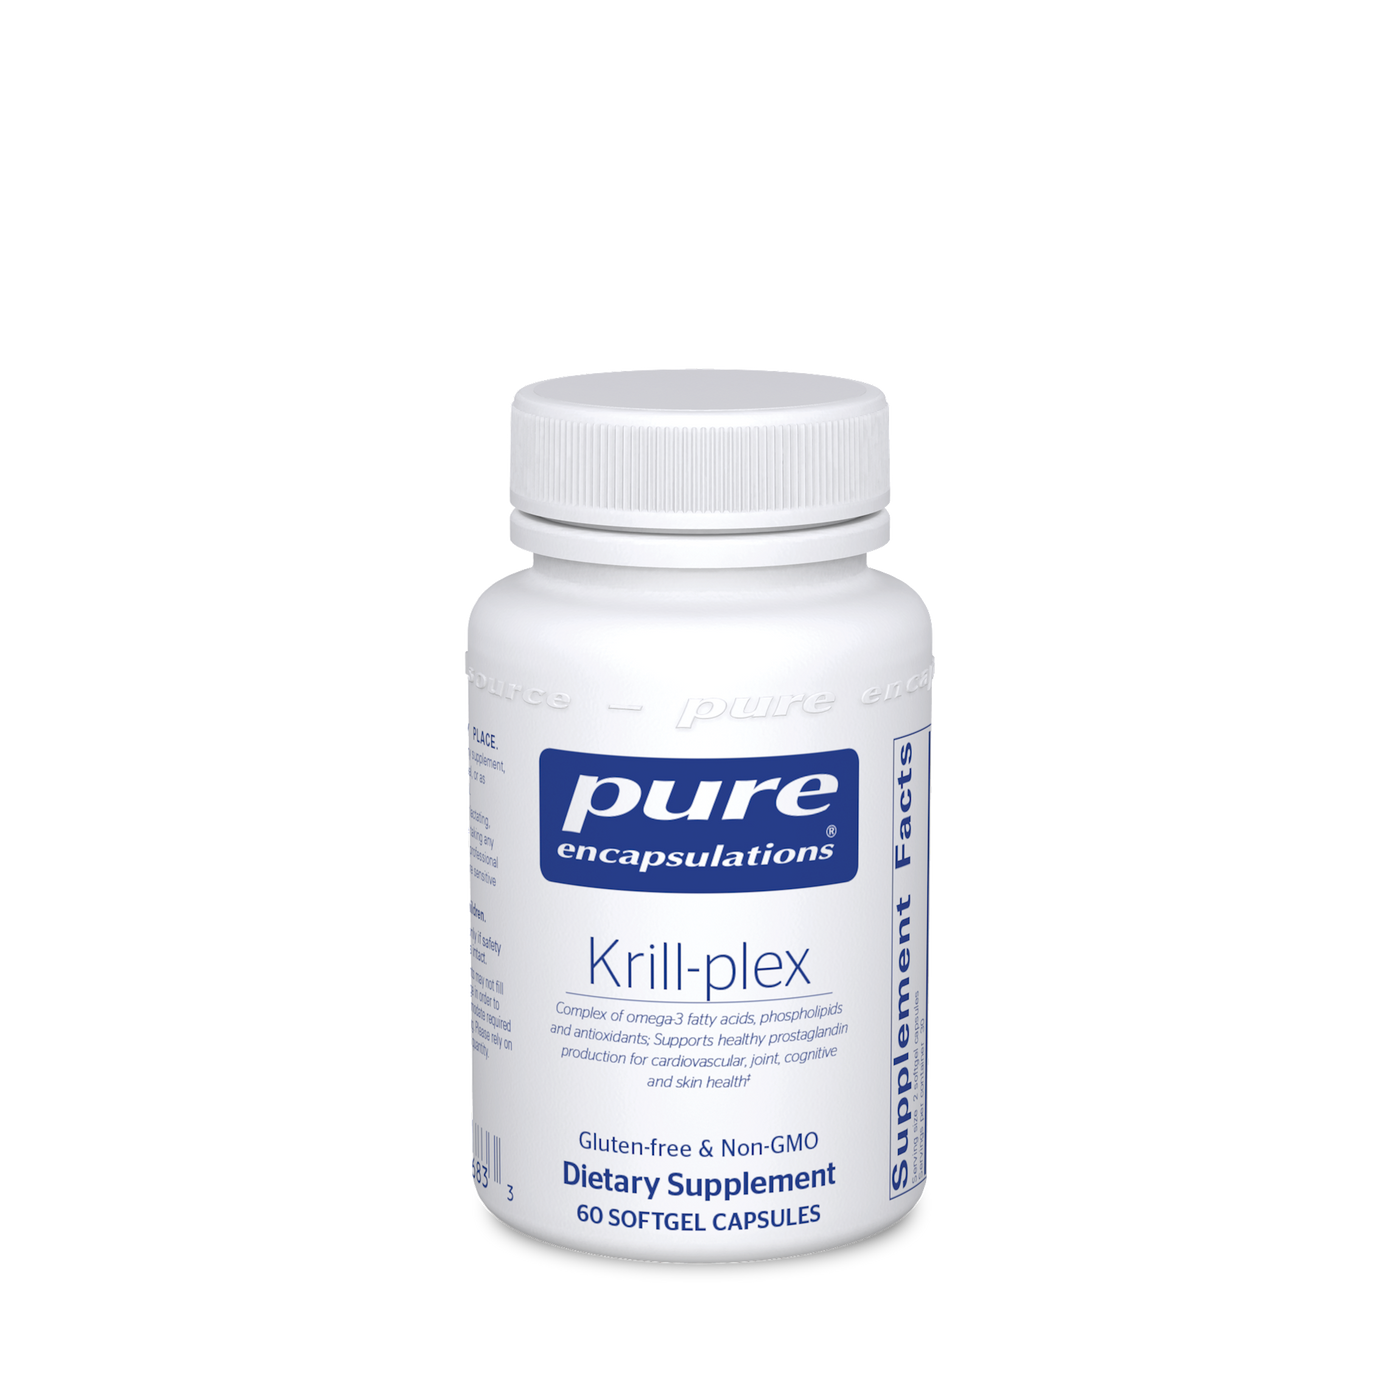 Krill-plex 500 mg 60 gels Curated Wellness